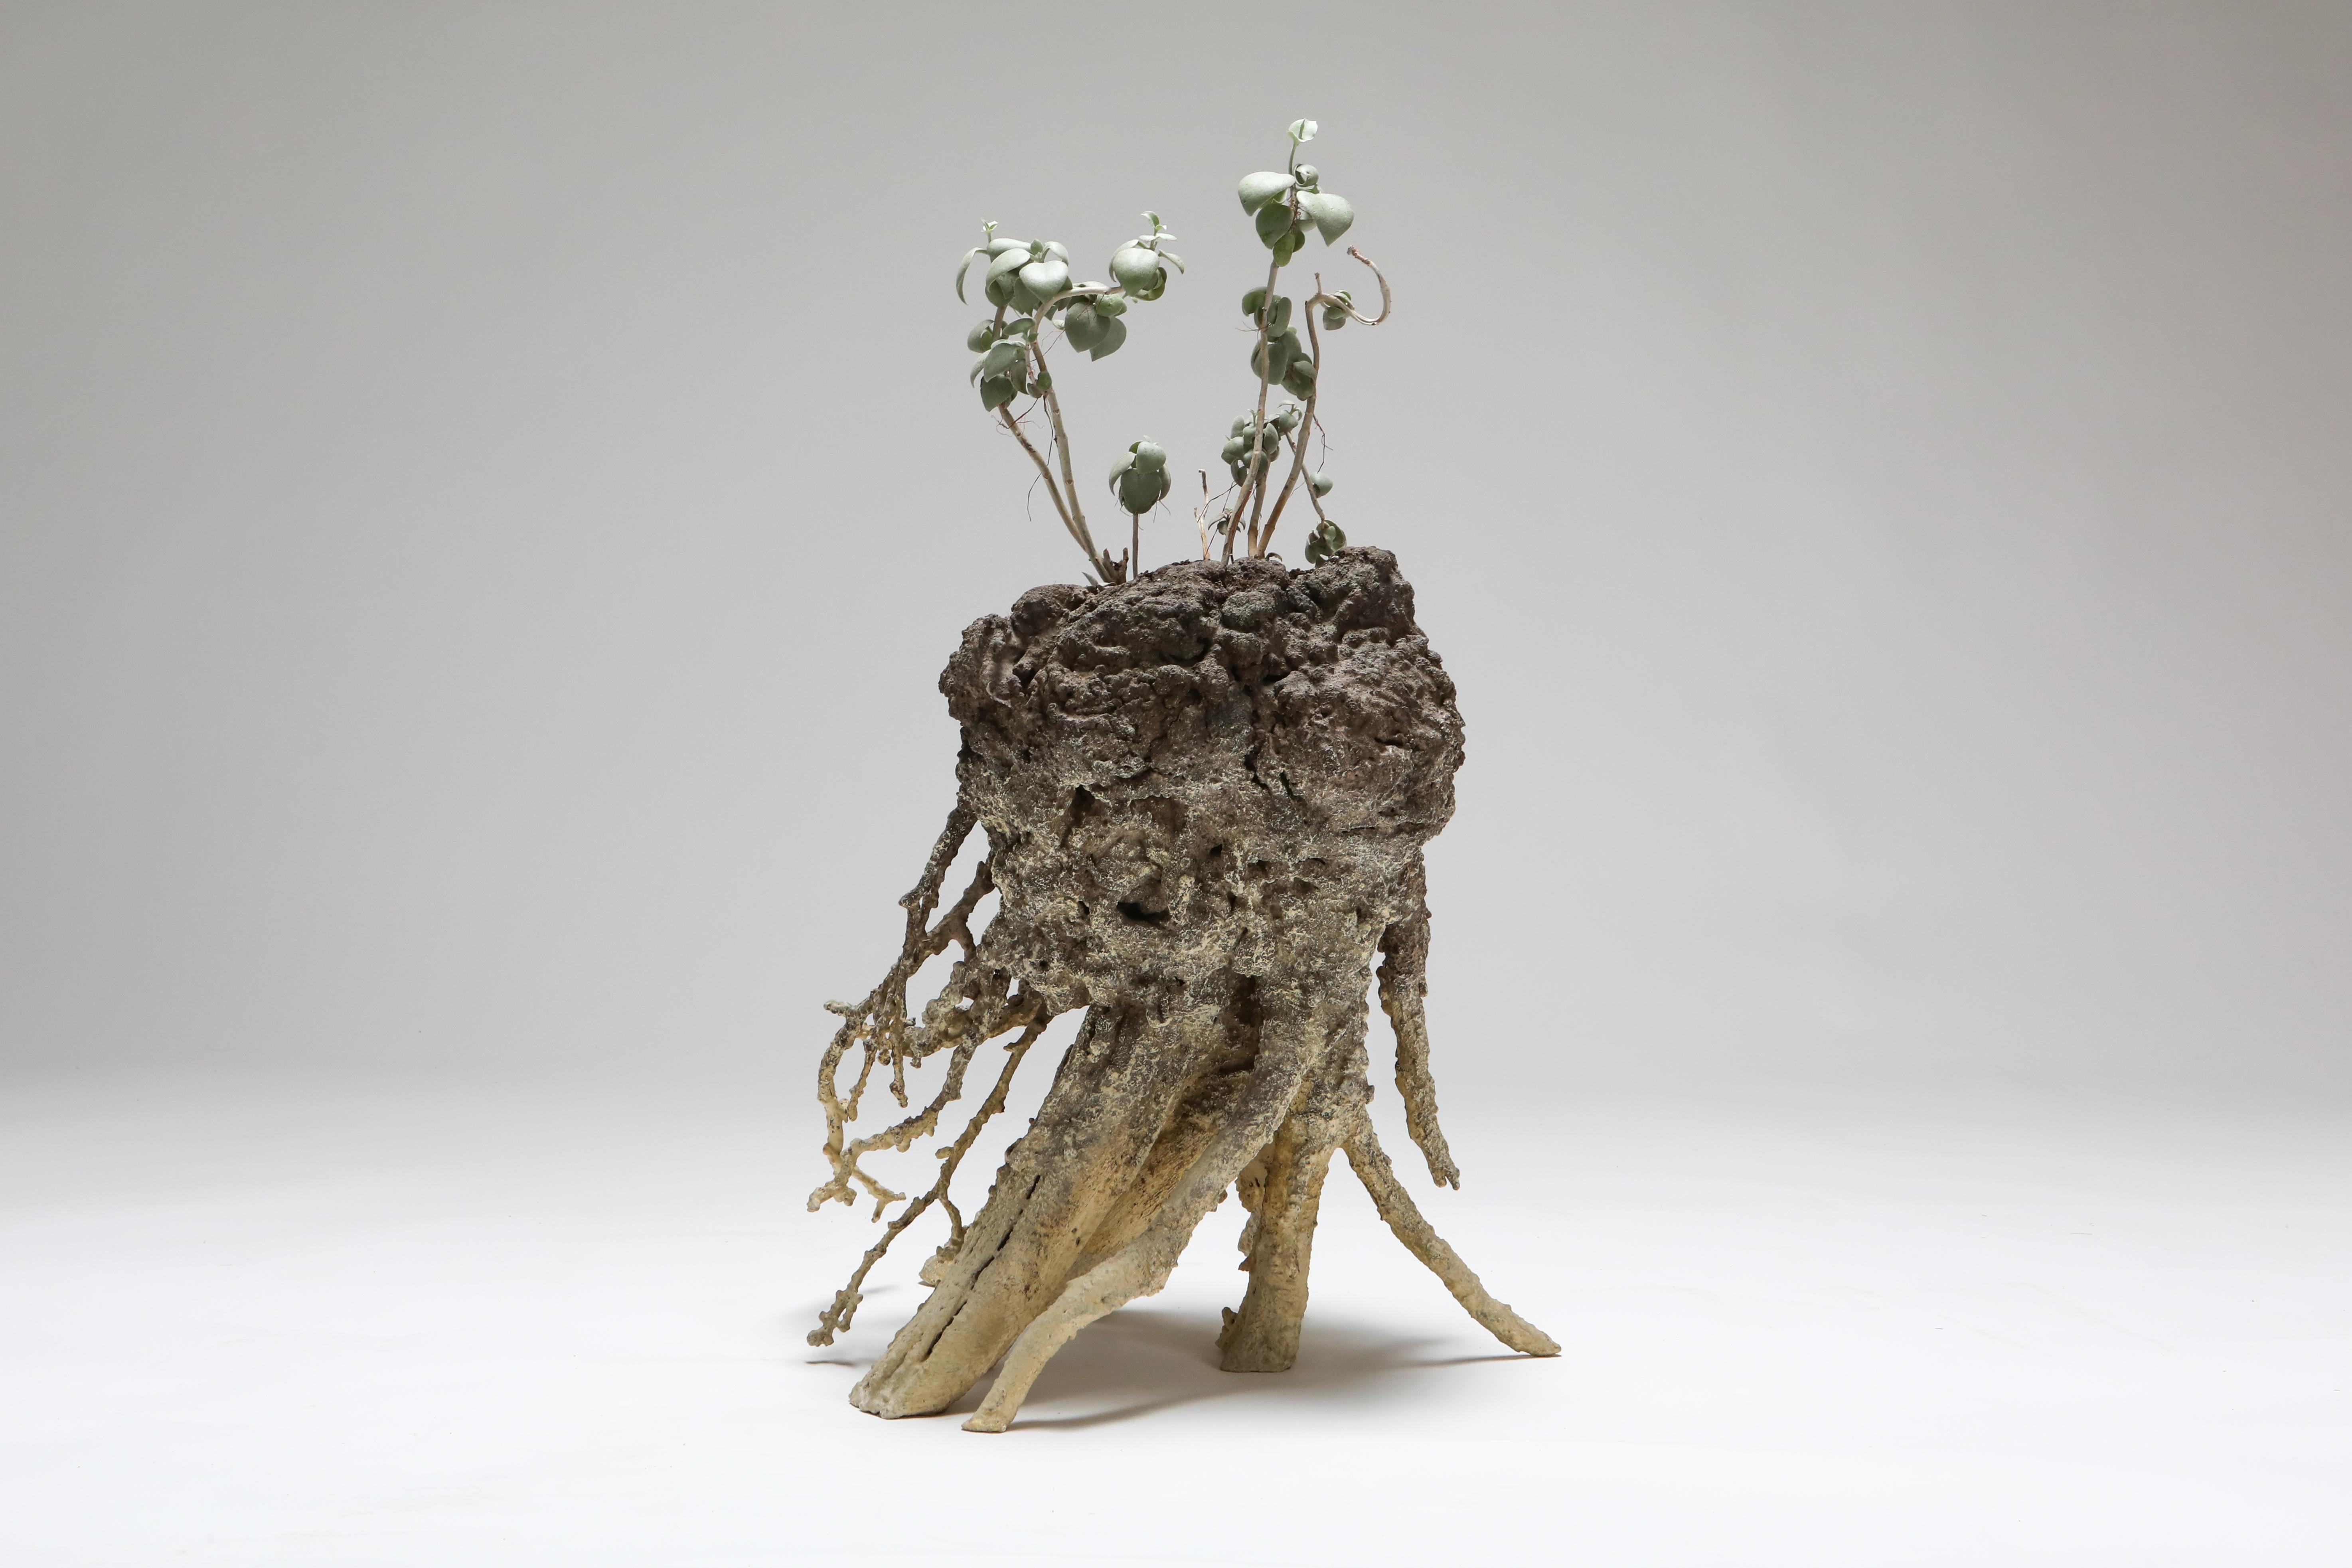 Zeitgenössische Pflanzgefäße / Pflanze, touche-touche, Frankreich, 2020.

Mnetonimic Pneumatophres II ist ein zeitgenössisches, funktionales Kunstobjekt des Duos touche-touche. Das Einzelstück war Teil der Einzelausstellung in der Everyday Gallery